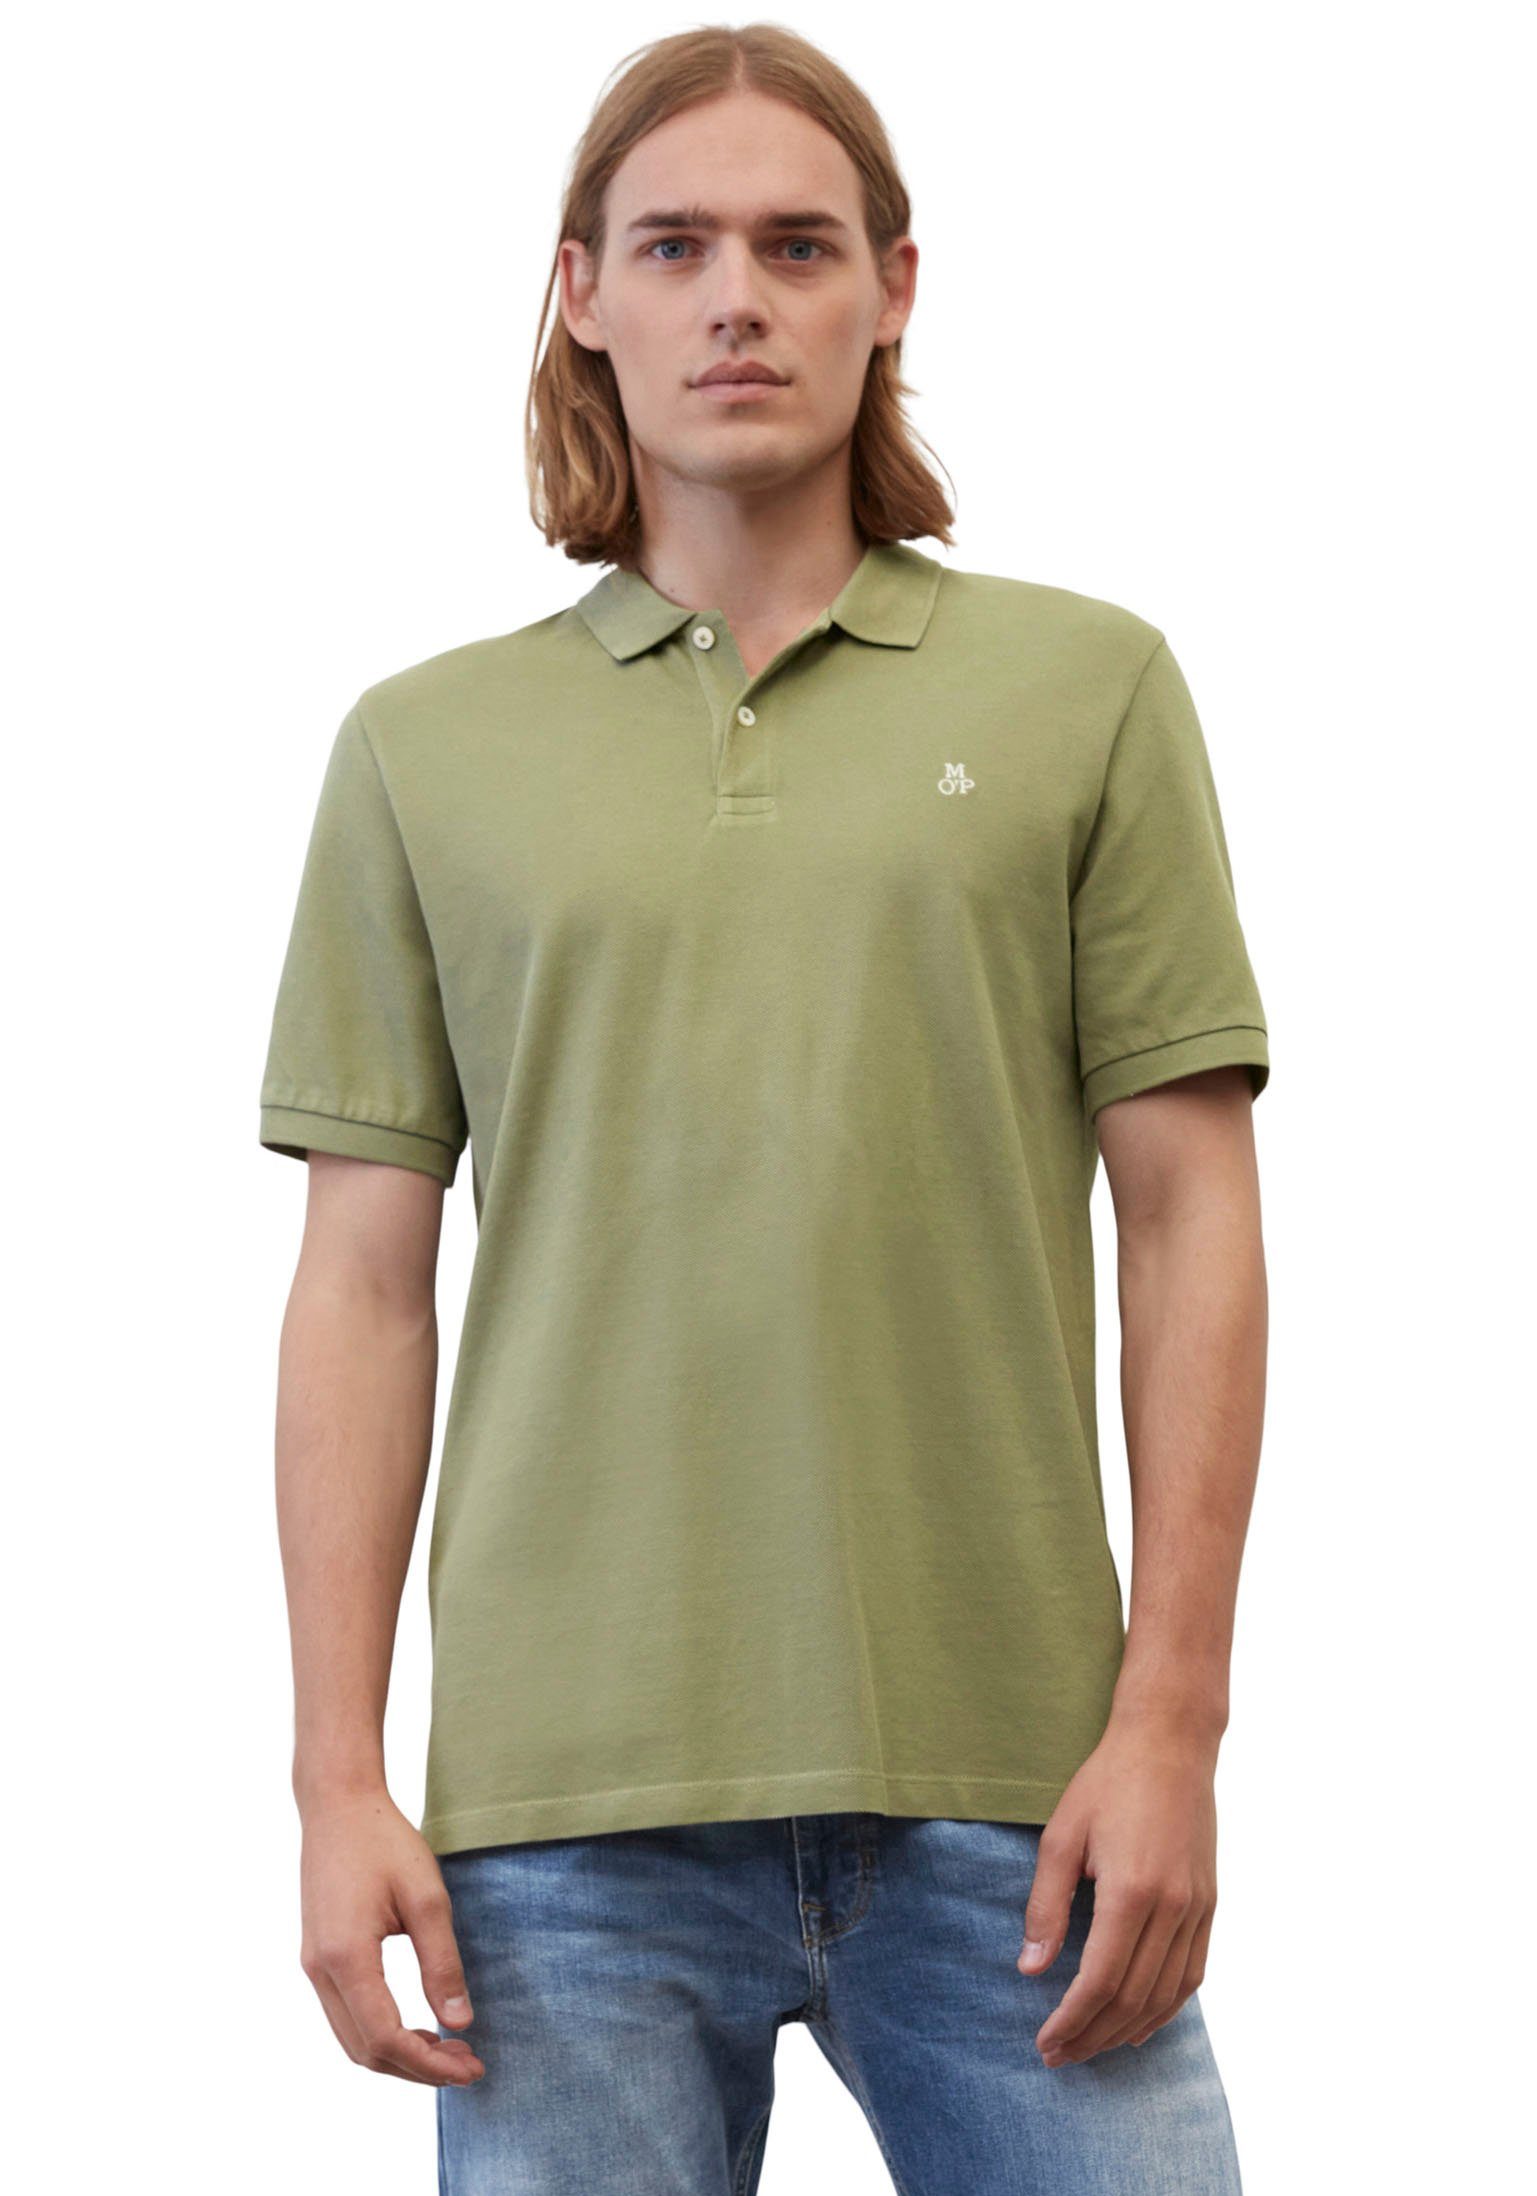 Cotton-Piqué-Qualität in weicher Poloshirt Bio-Baumwolle reiner, Organic aus O\'Polo Poloshirt, Marc